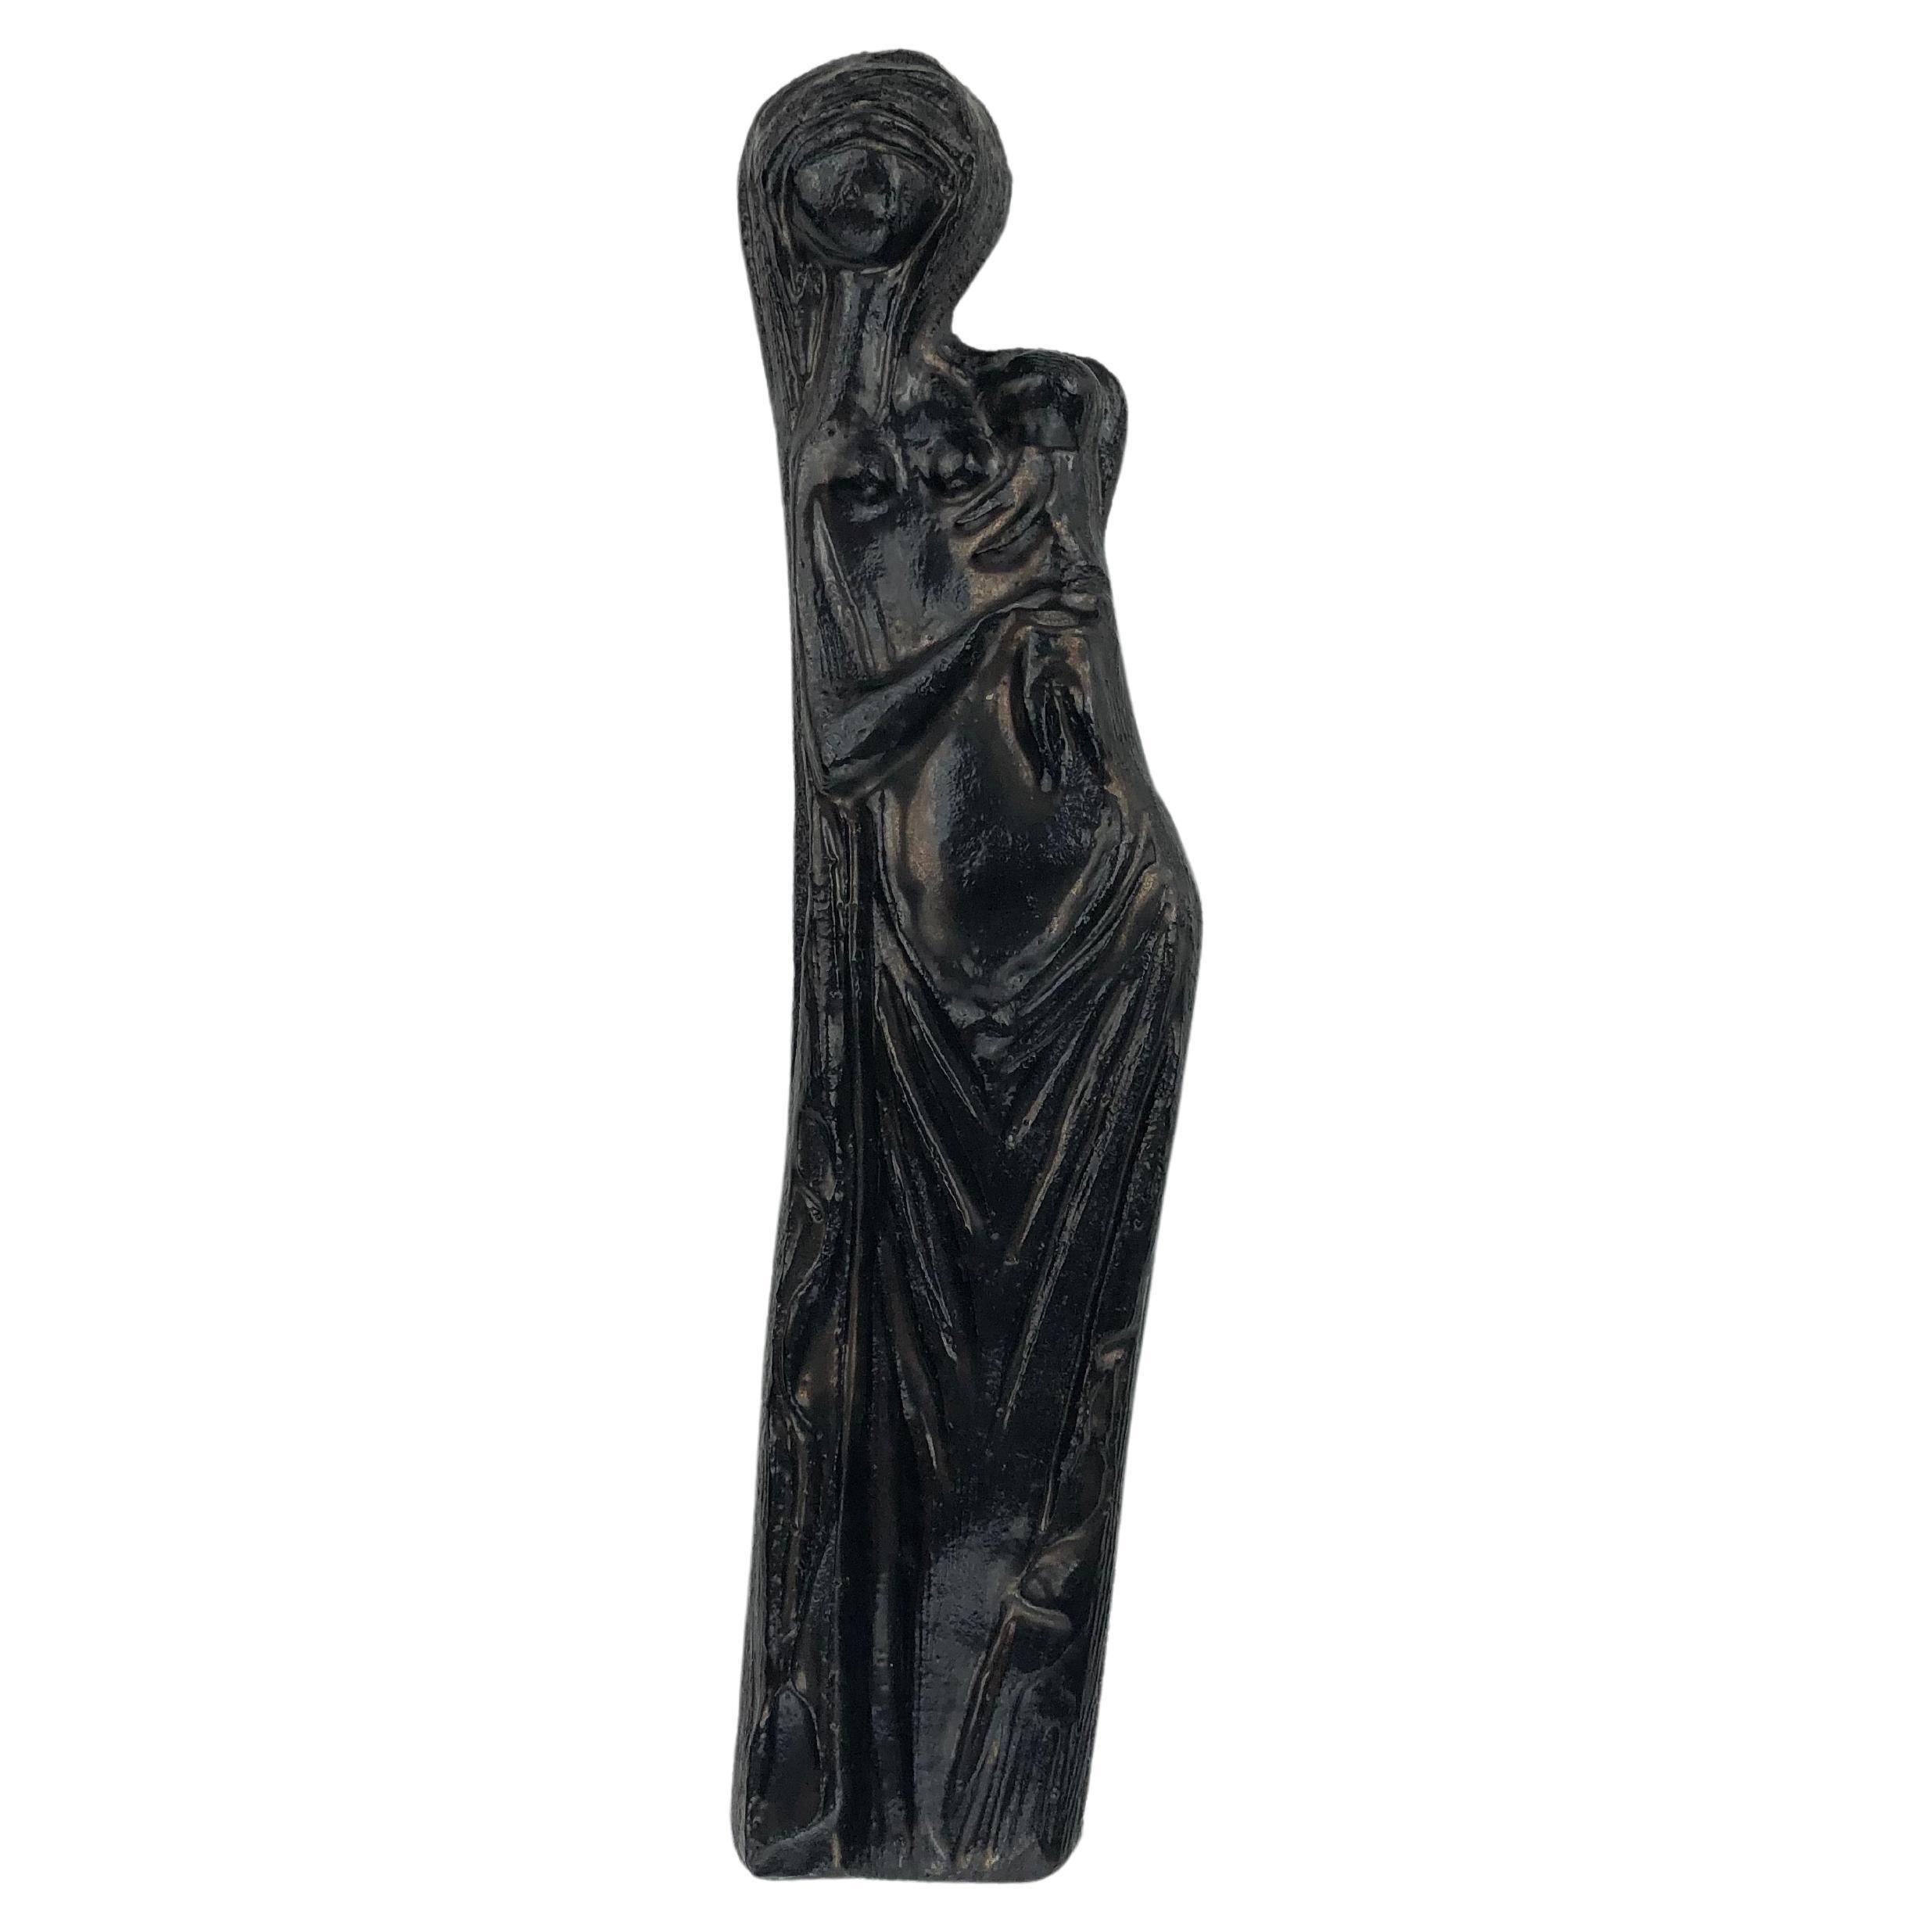 Die schwarze Keramik-Jungfrau Maria ist mit dezent irisierenden Brauntönen verziert. Dieses Keramikkreuz besticht durch eine Mischung aus erdiger Wärme und modernem Design. Der Glanz der matten Glasur und die subtilen Gesichtsausdrücke verleihen der